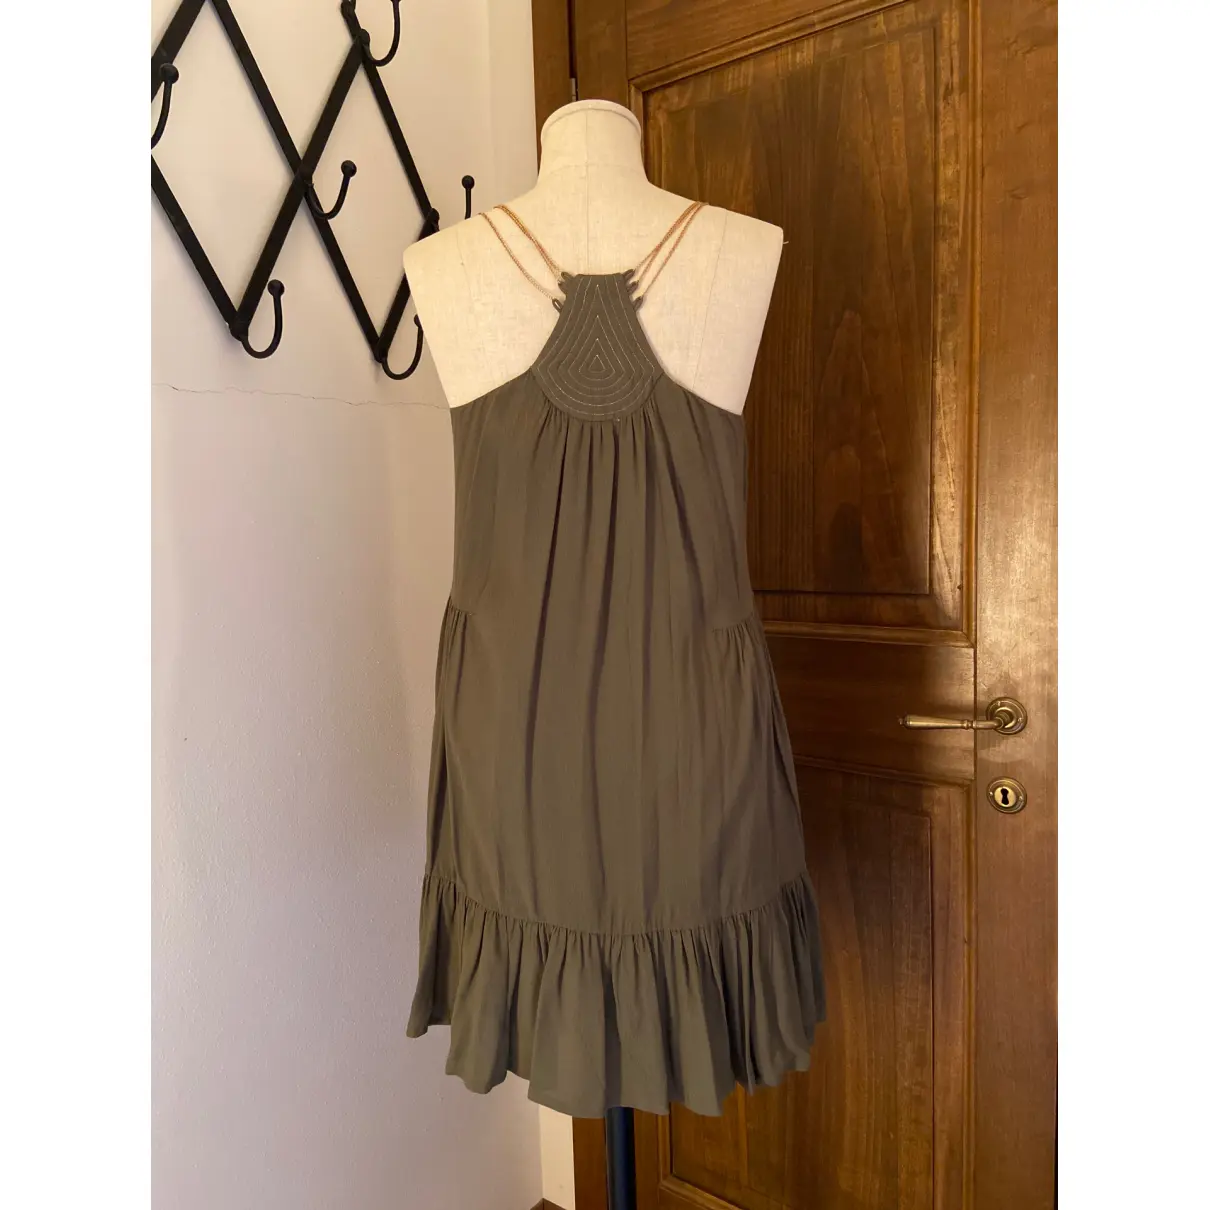 Buy The Korner Mini dress online